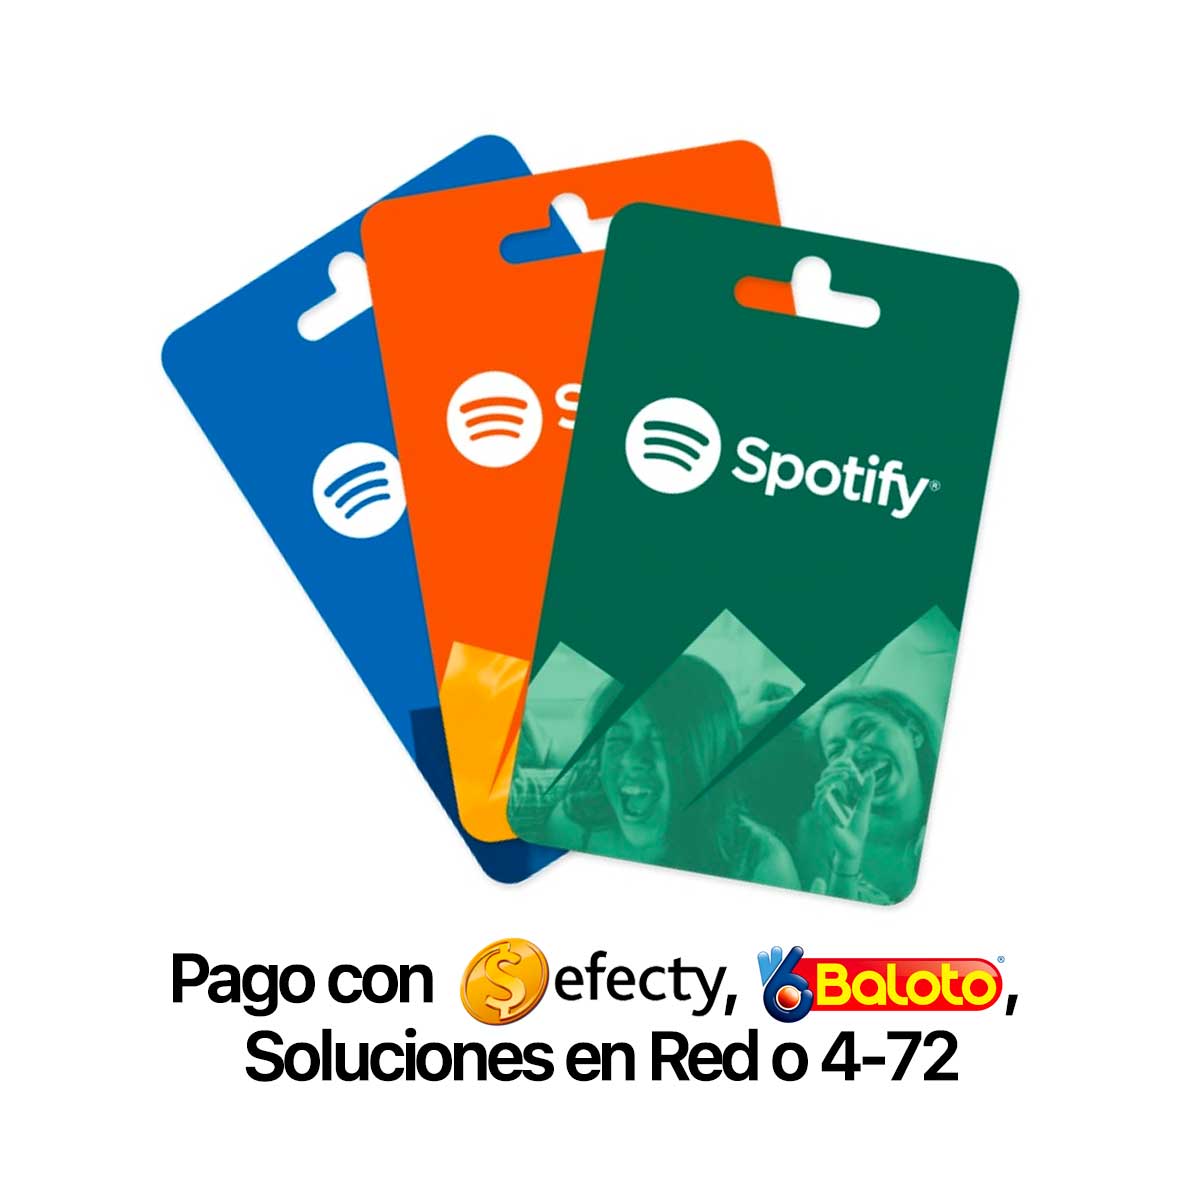 PIN Spotify $15.000 (Pago con Efecty, Baloto, Soluciones en Red o 4-72)  Colombia